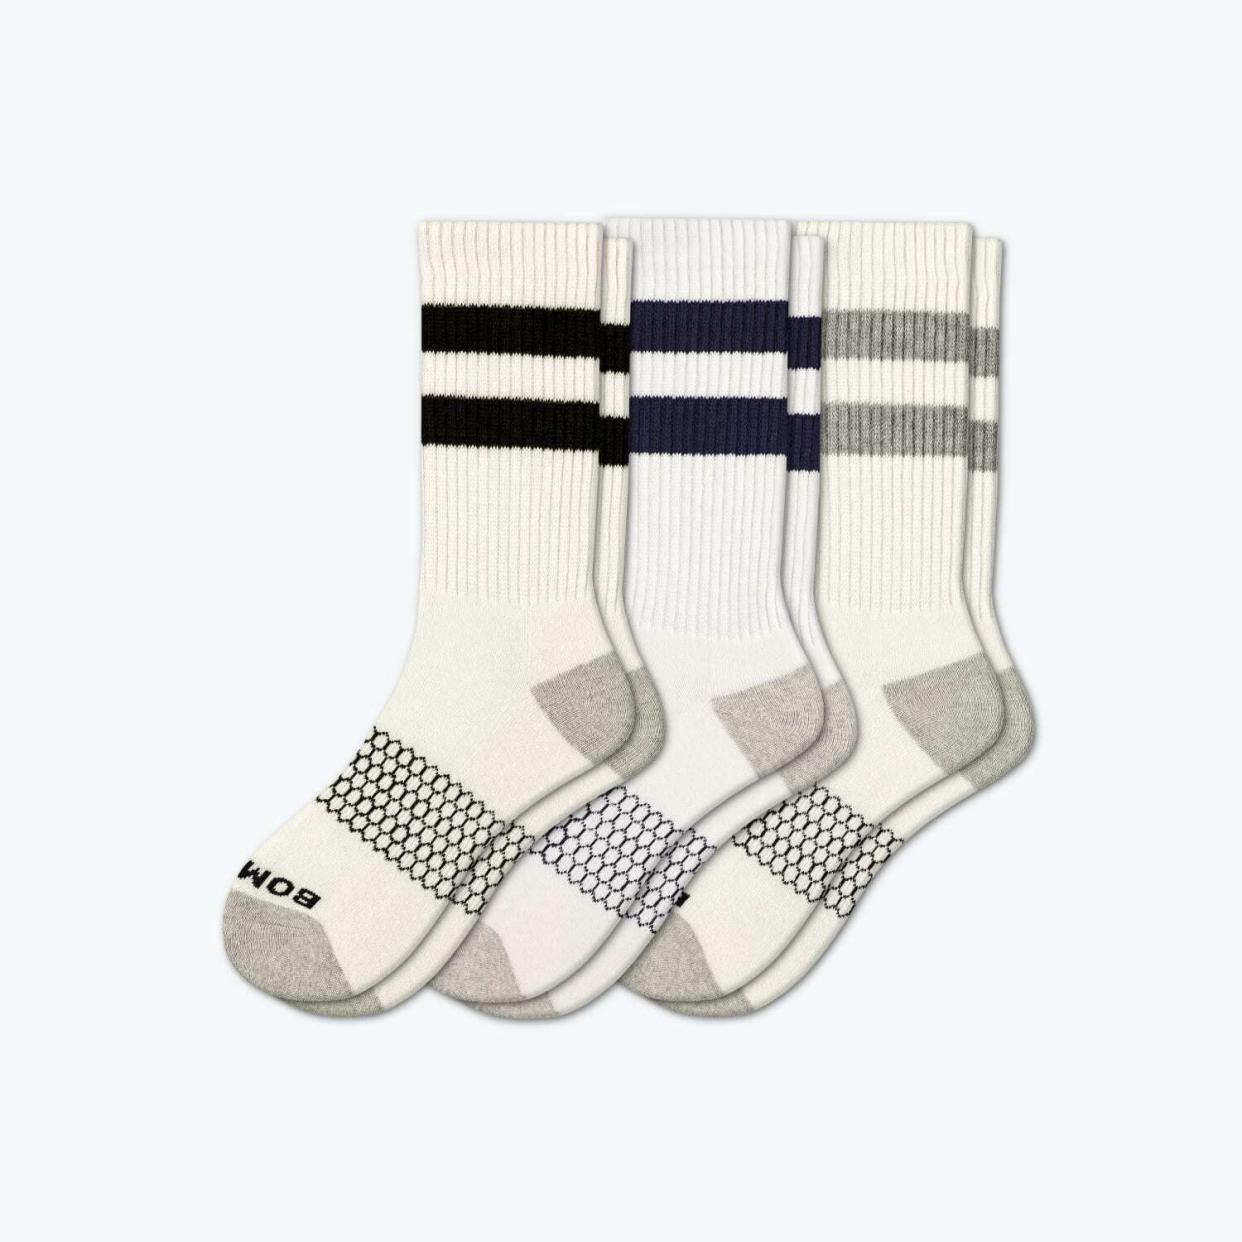 Bombas Men's Vintage Stripe Calf Sock 3-Pack, Mixed White